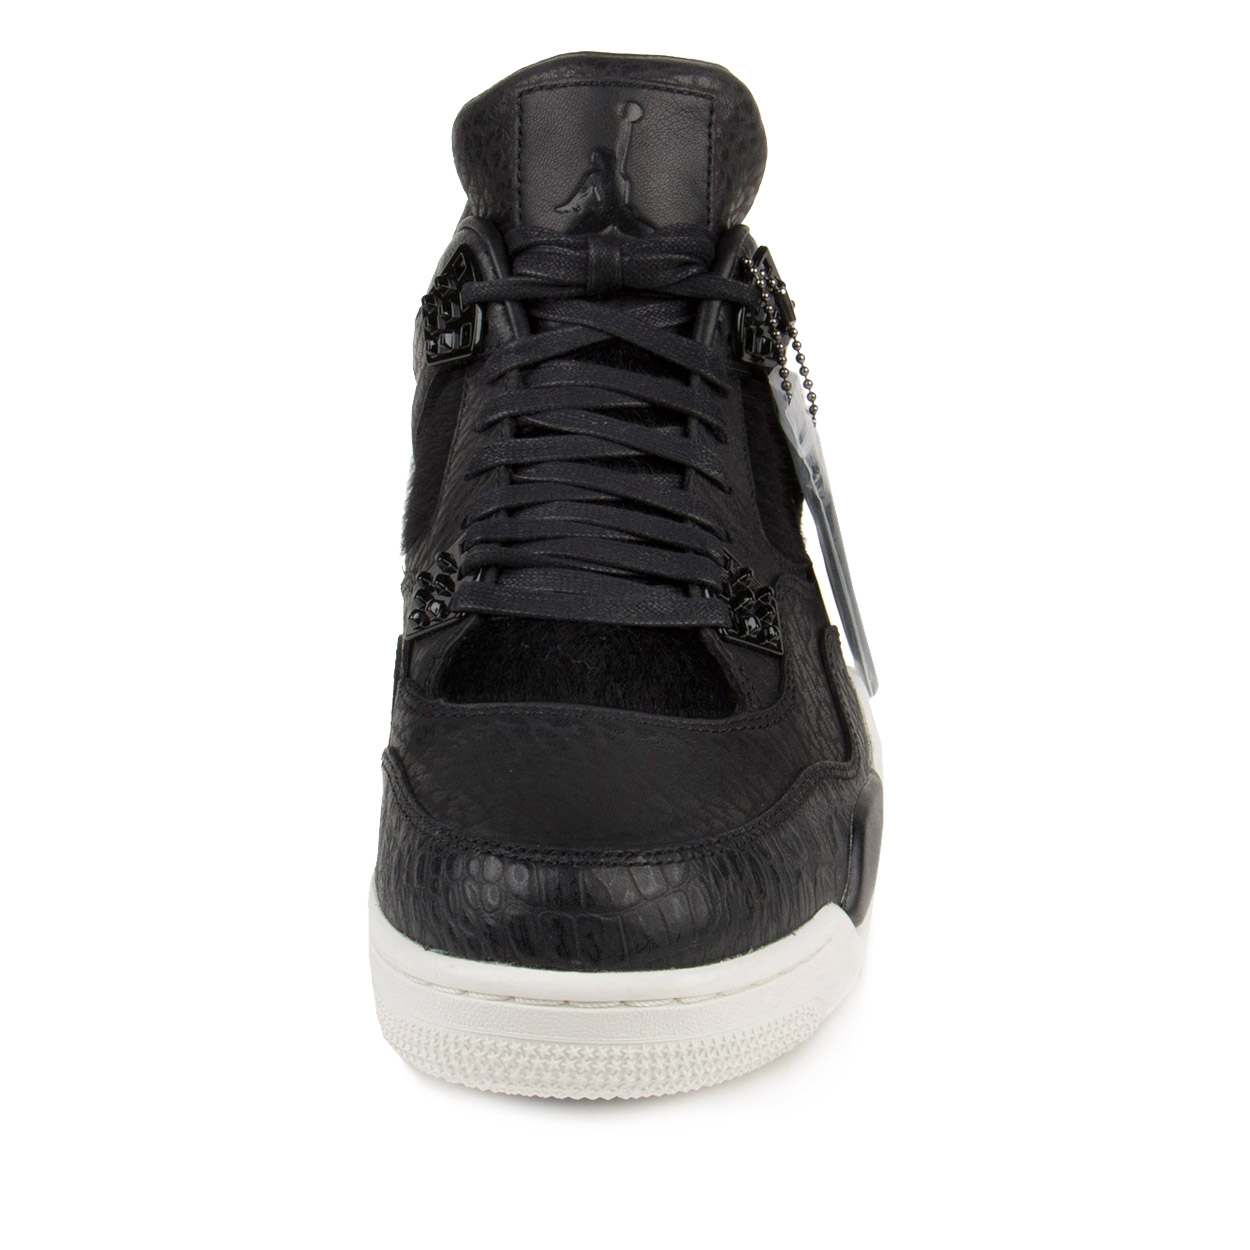 Nike Mens Air Jordan 4 Retro Premium "Pinnacle" Black/Sail 819139-010 - image 3 of 7